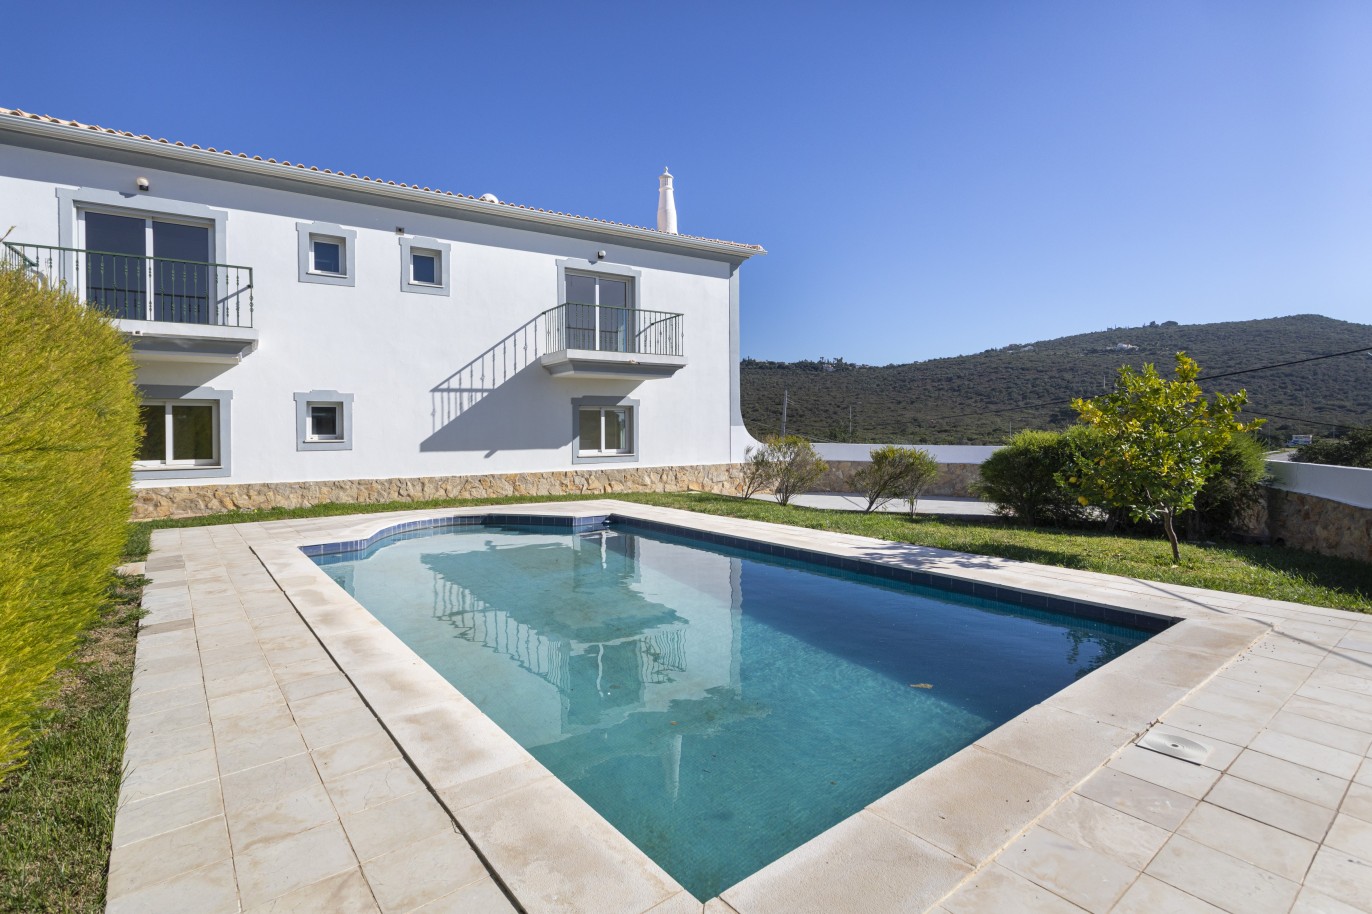 Nova moradia V4 geminada com piscina, para venda em Loulé, Algarve_246577